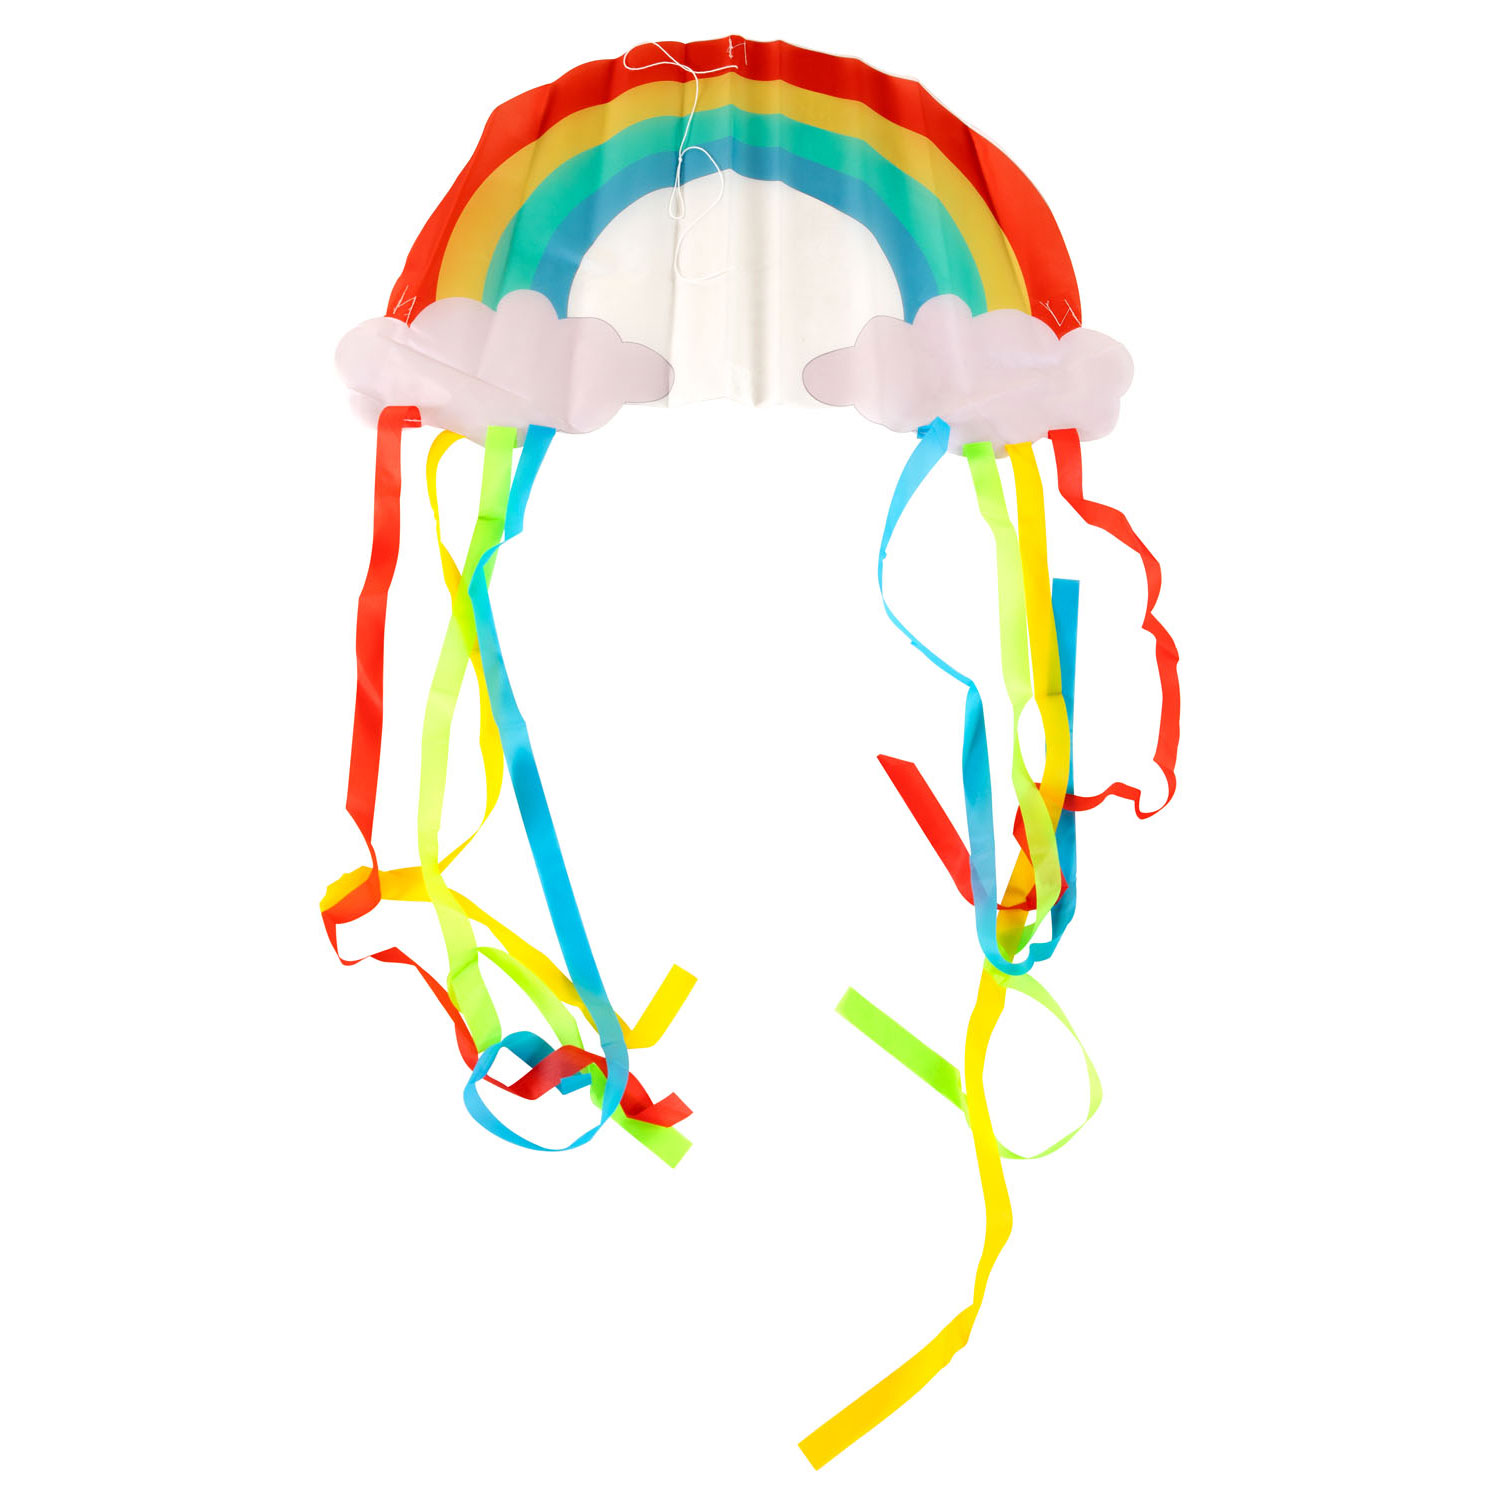 Kinder Vlieger - Regenboog